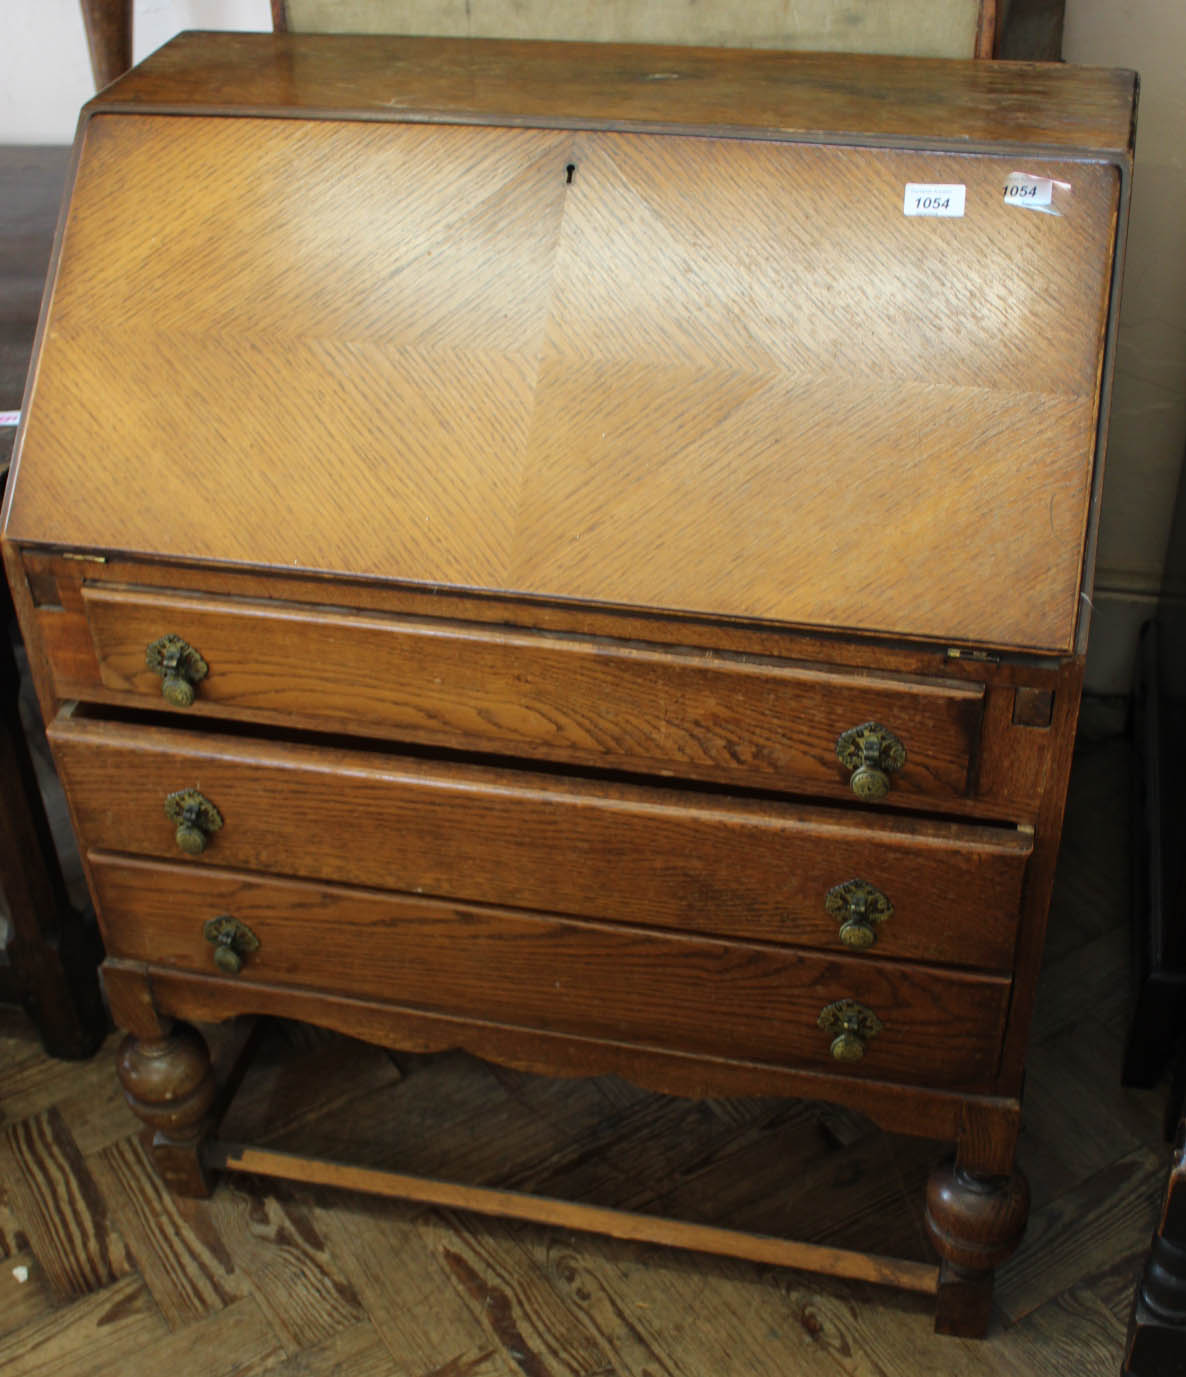 A 1940's oak three drawer bureau